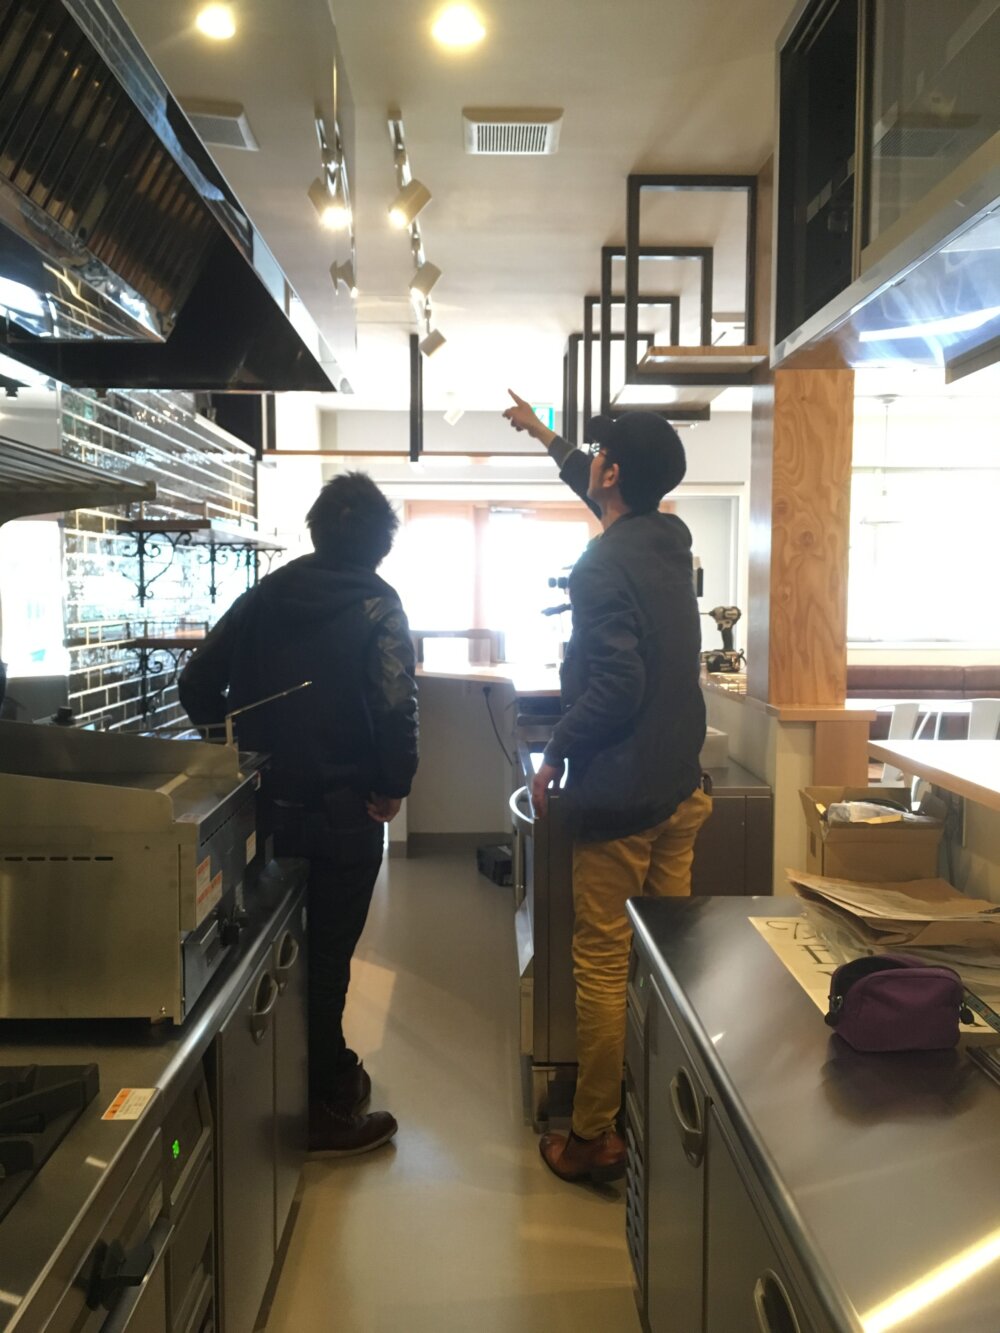 飲食店の厨房をオープンキッチンにしようと考えています。どのような点に注意すればよいでしょうか？ | 東京神奈川の飲食店設計施工の